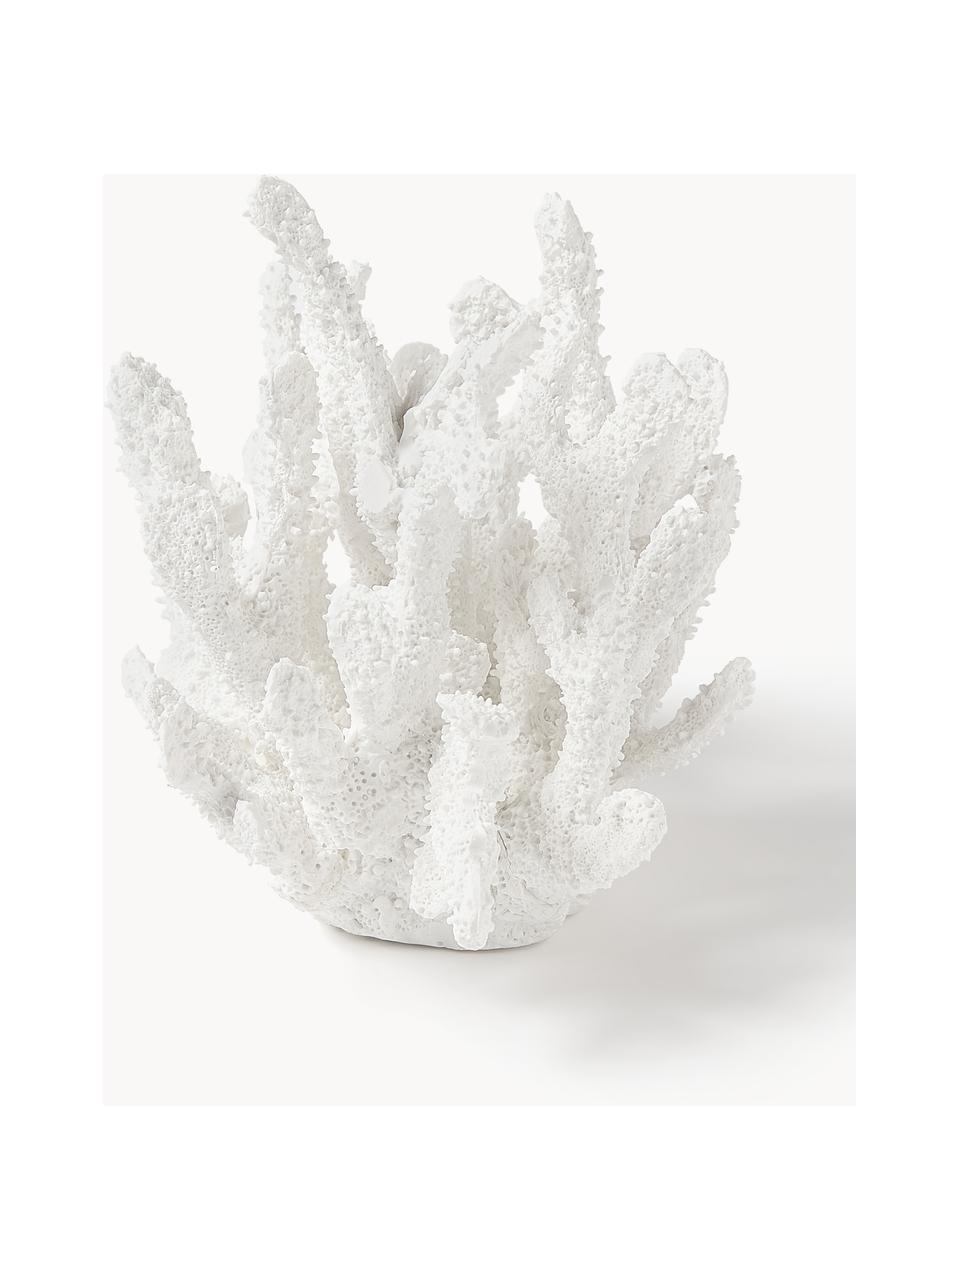 Objet décoratif design Coral, Polyrésine, Blanc, larg. 22 x haut. 17 cm